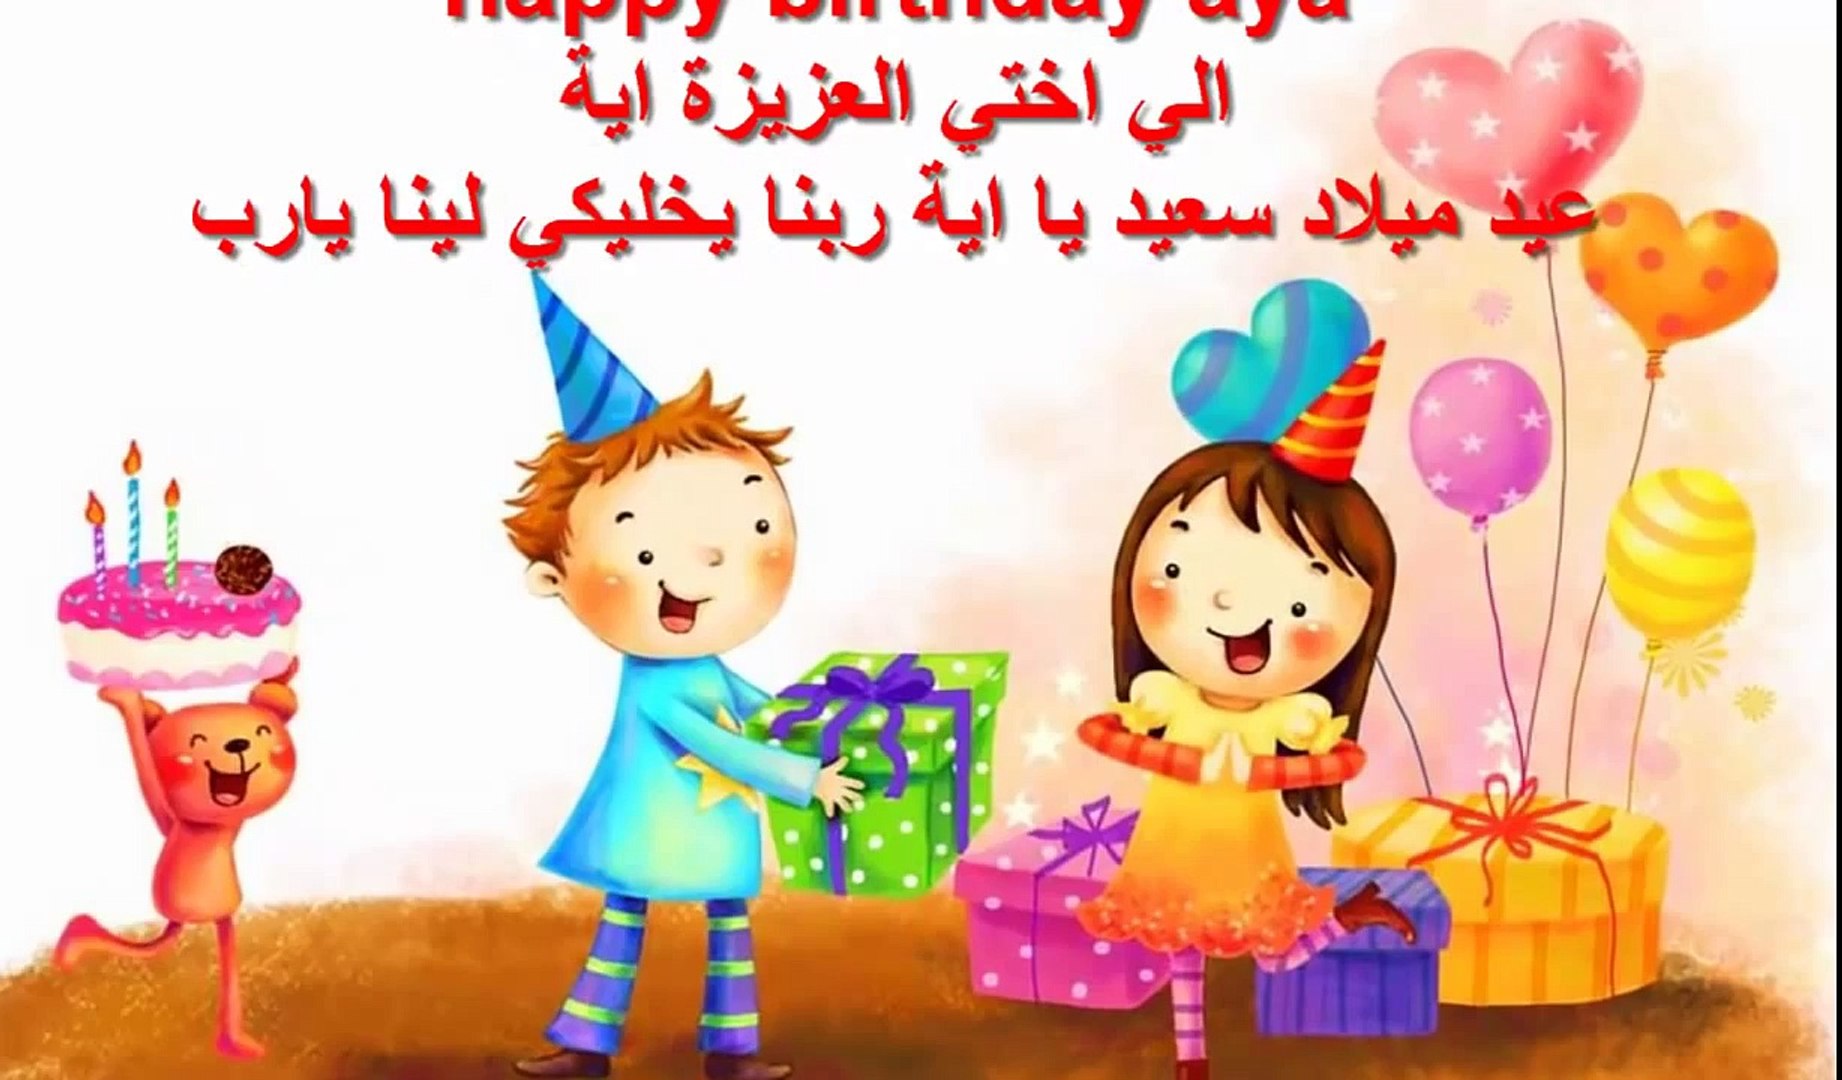 اغنية عيد ميلاد سعيد اخي الغالي Musiqaa Blog